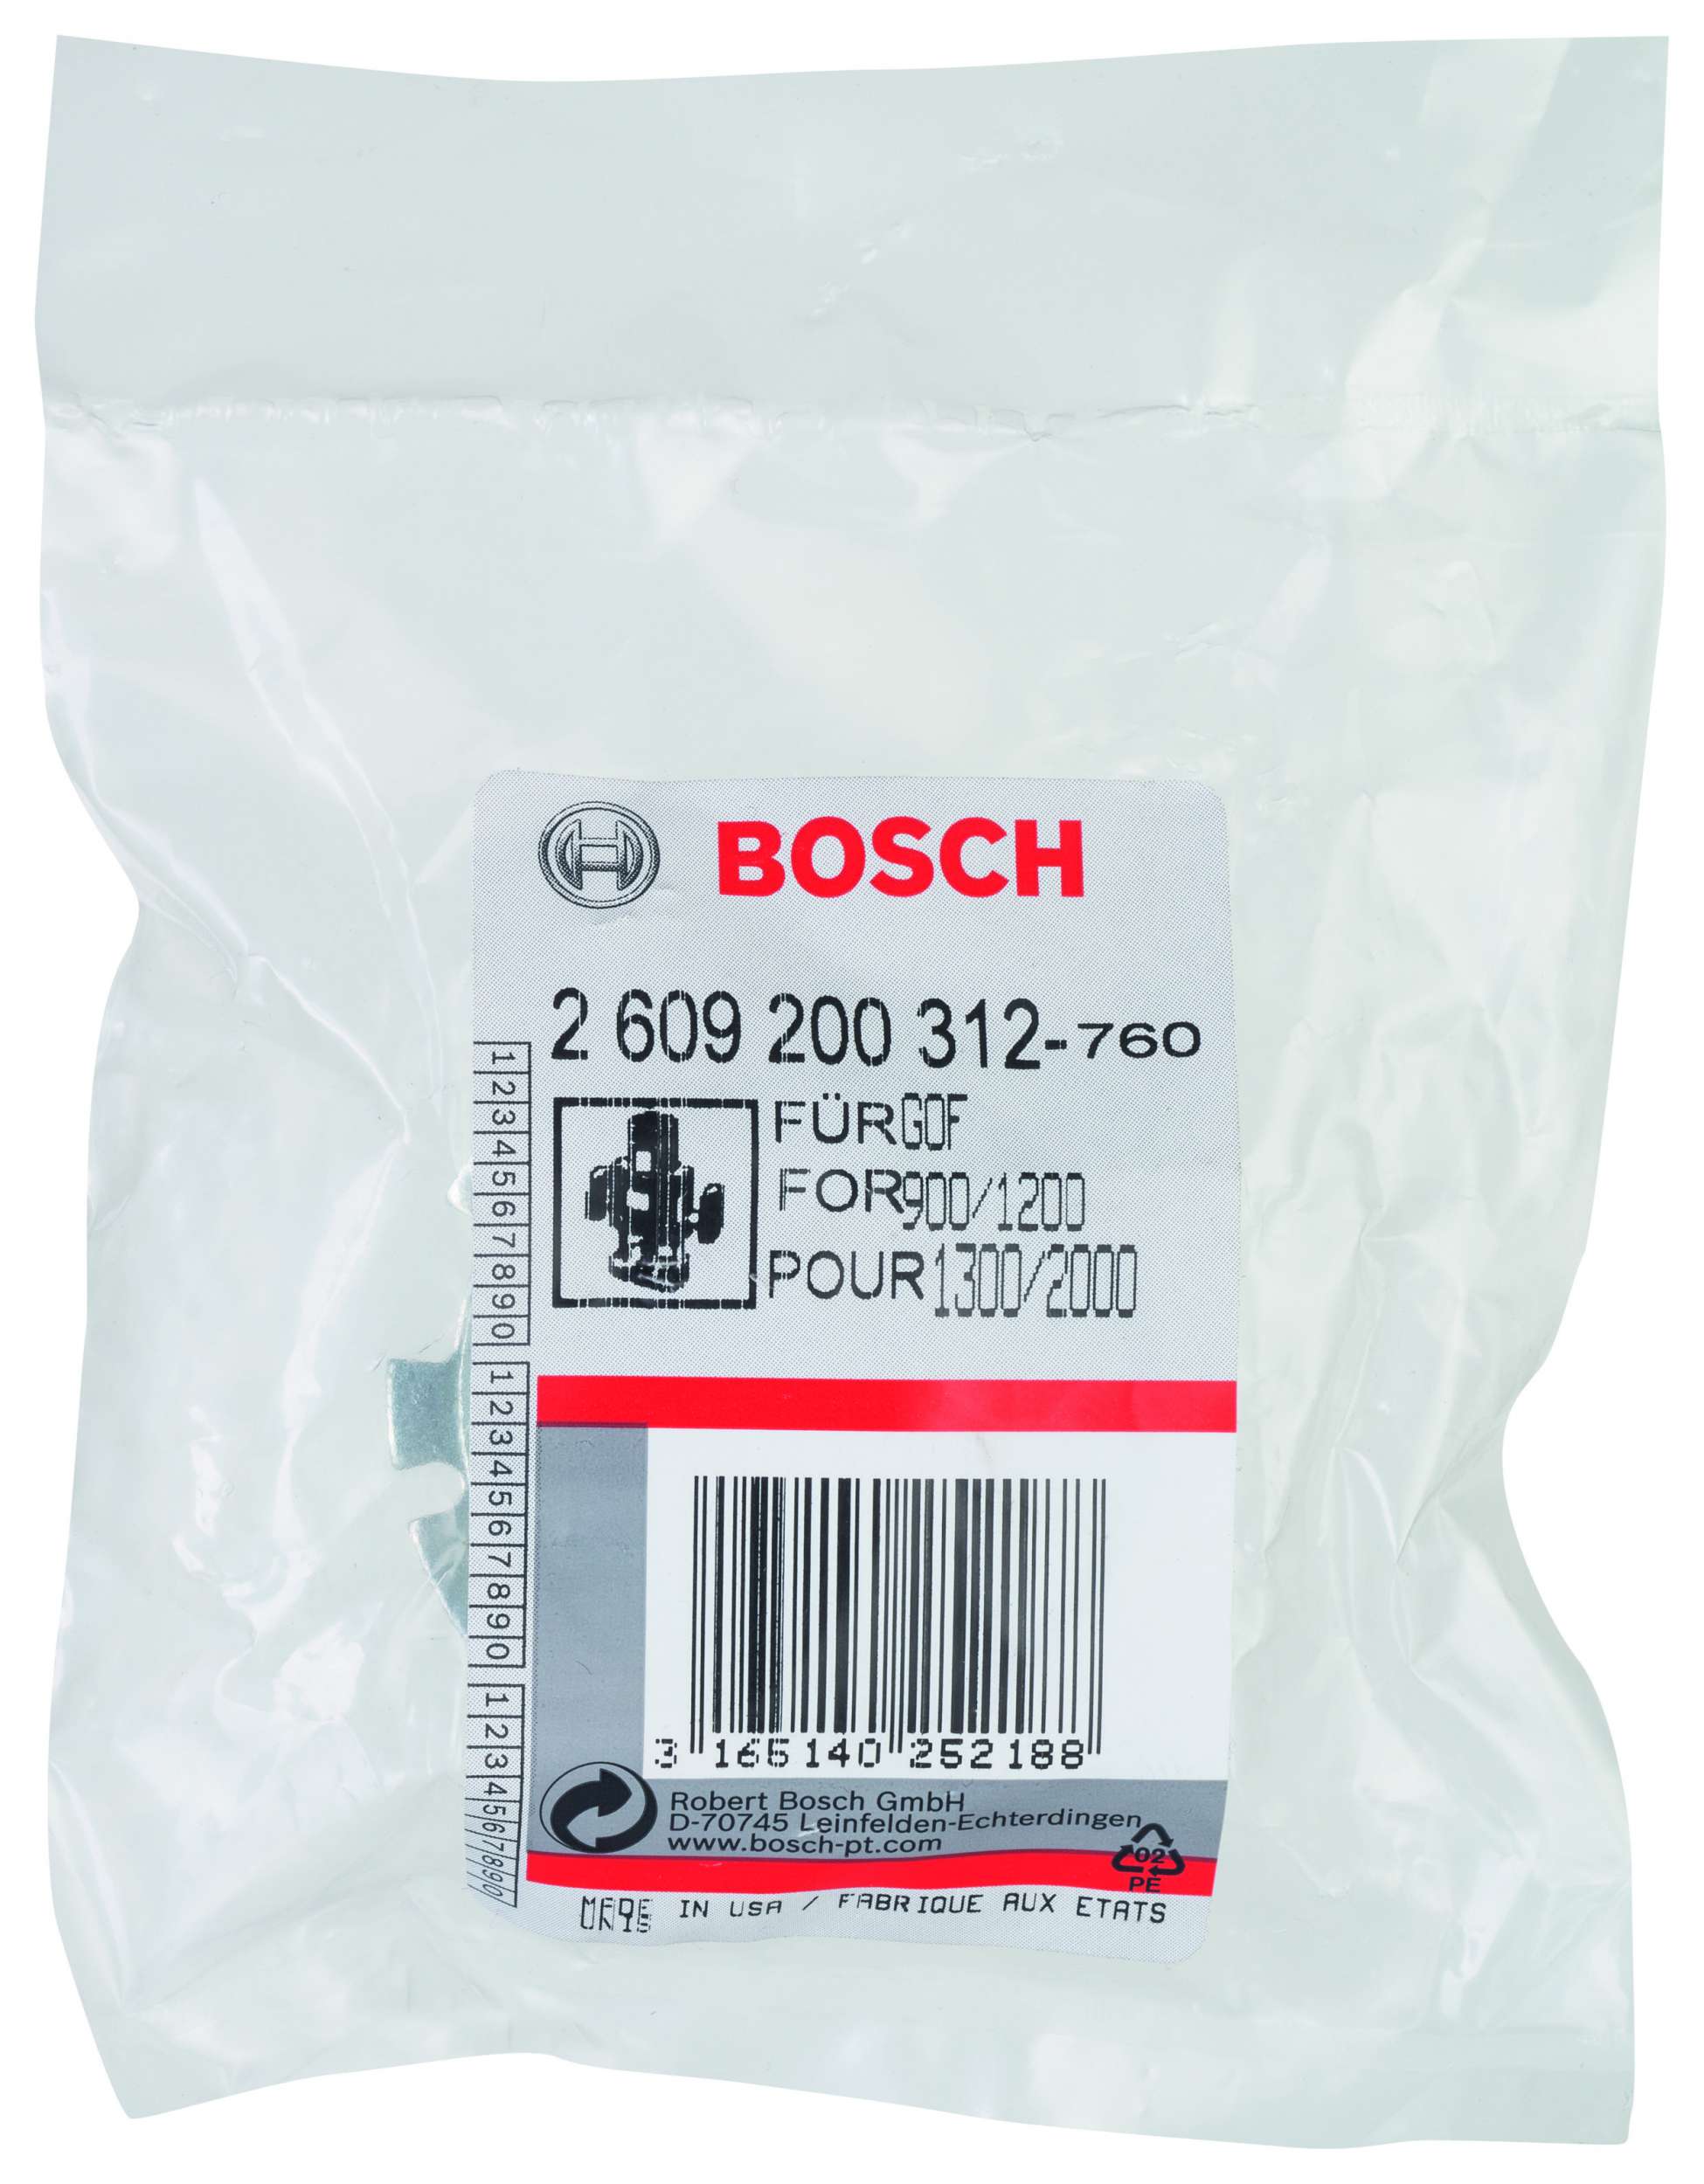 Bosch - Freze Kopyalama Sablonu 40 mm